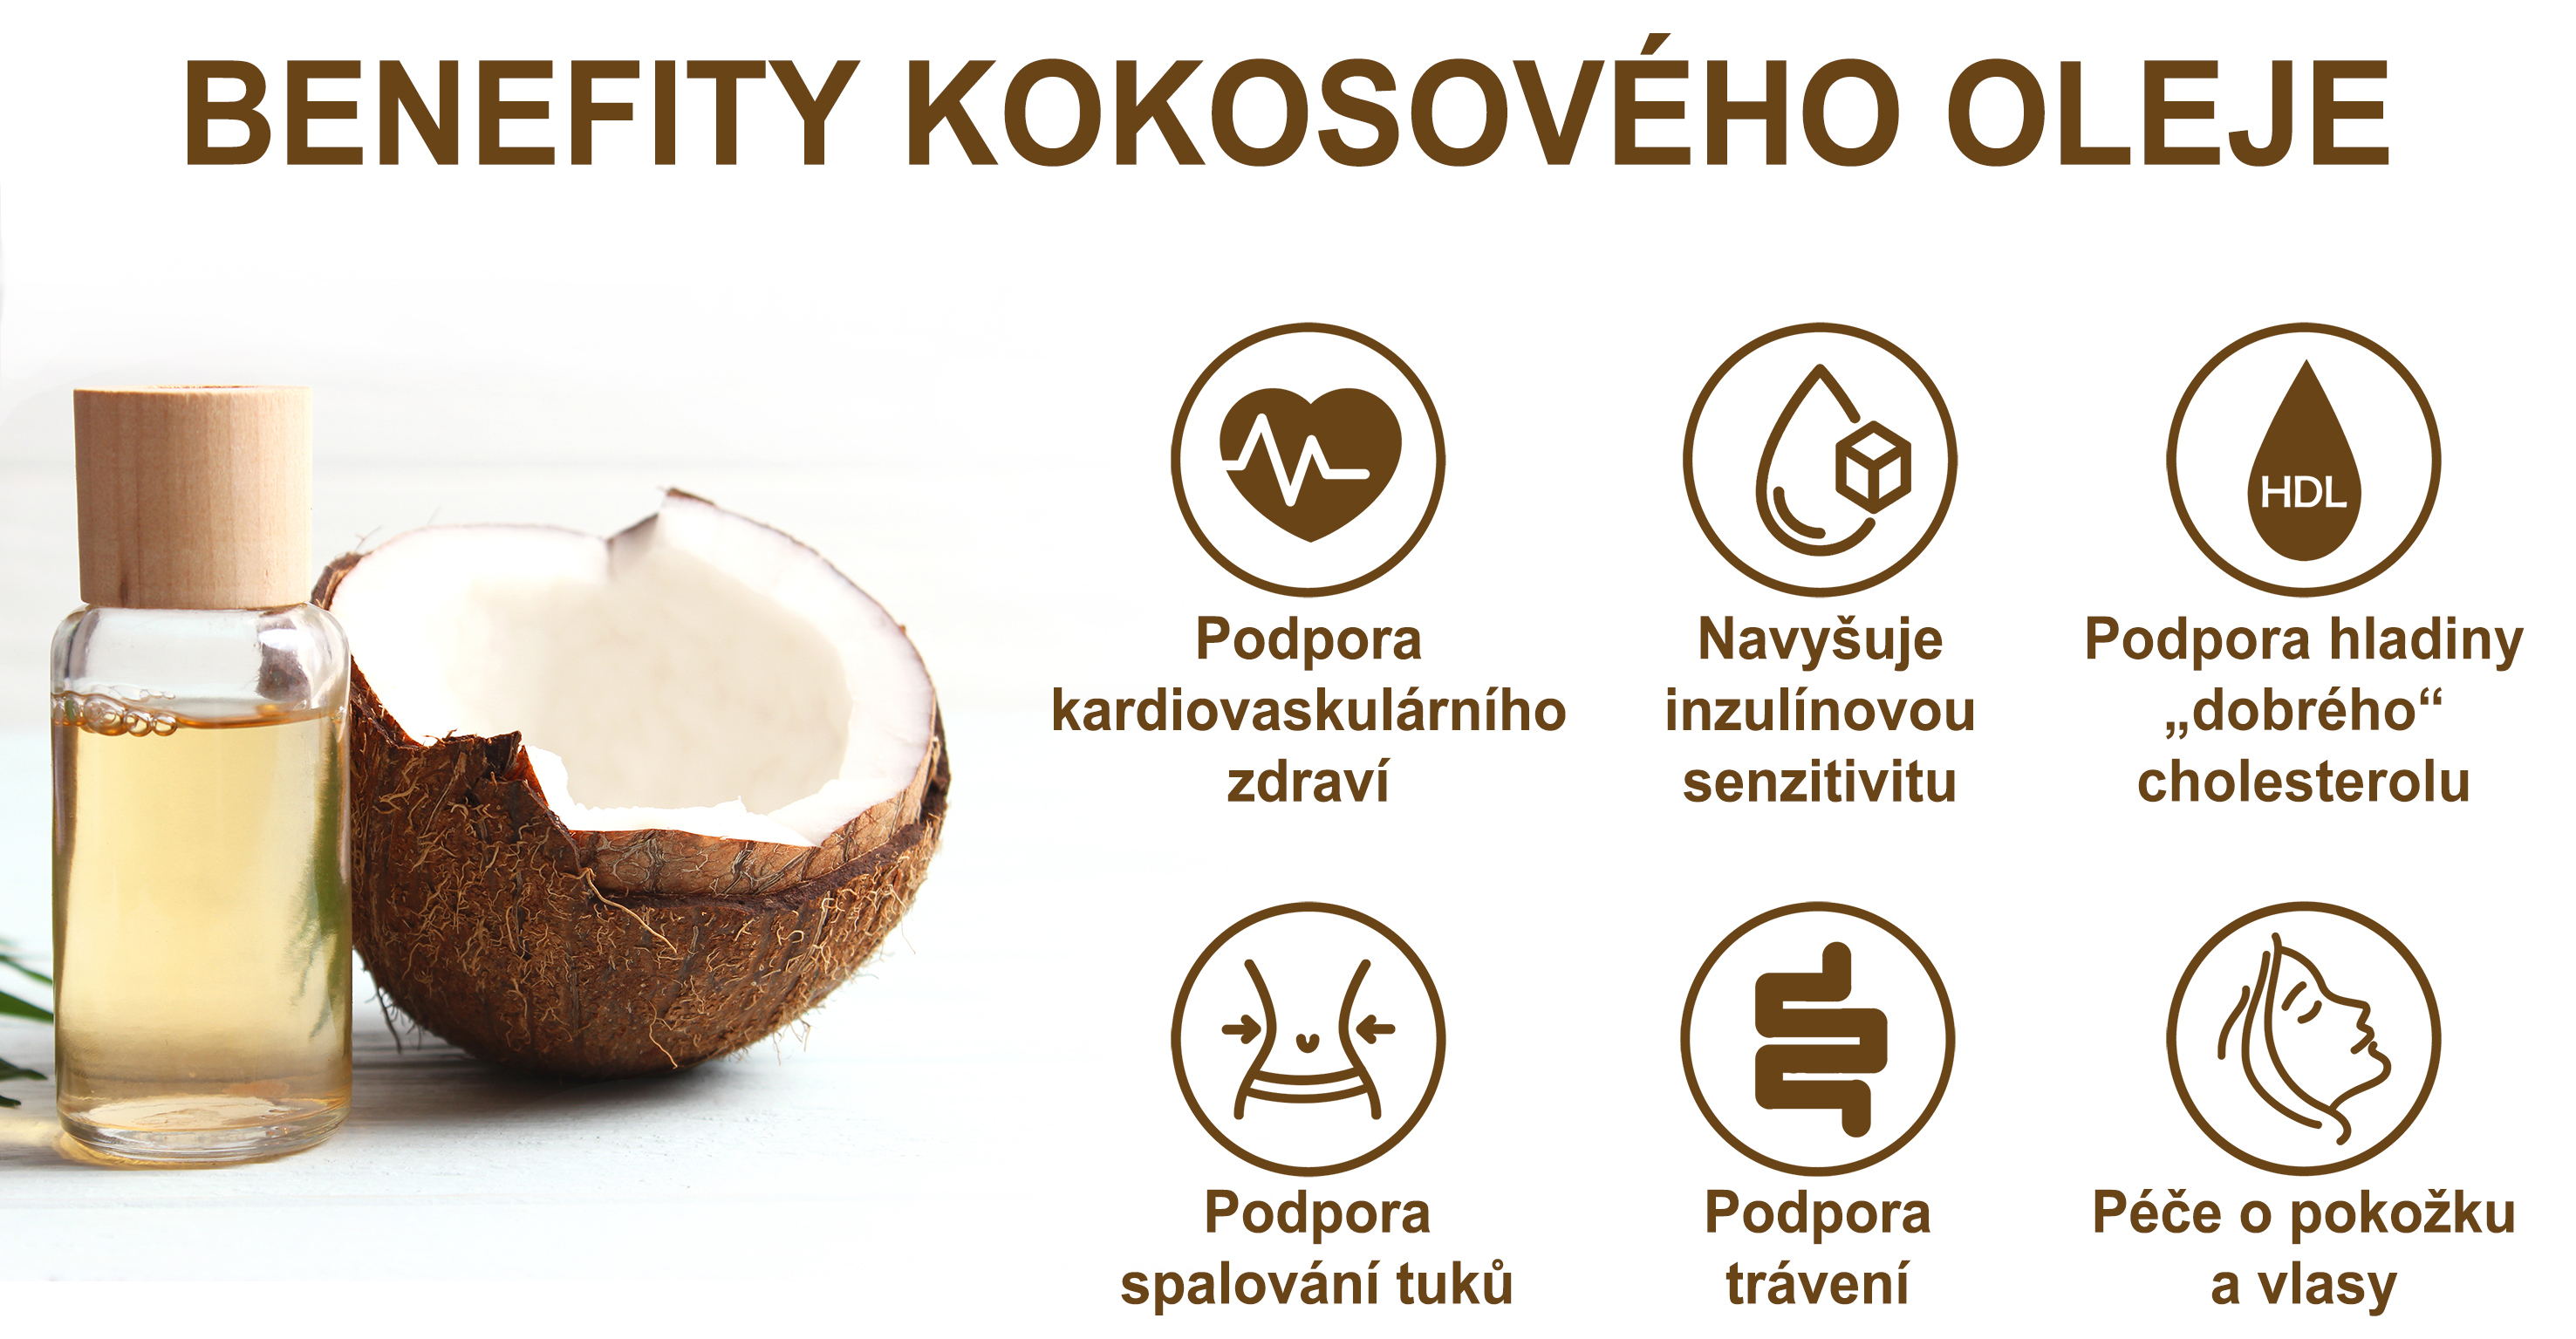 Benefity kokosového oleje